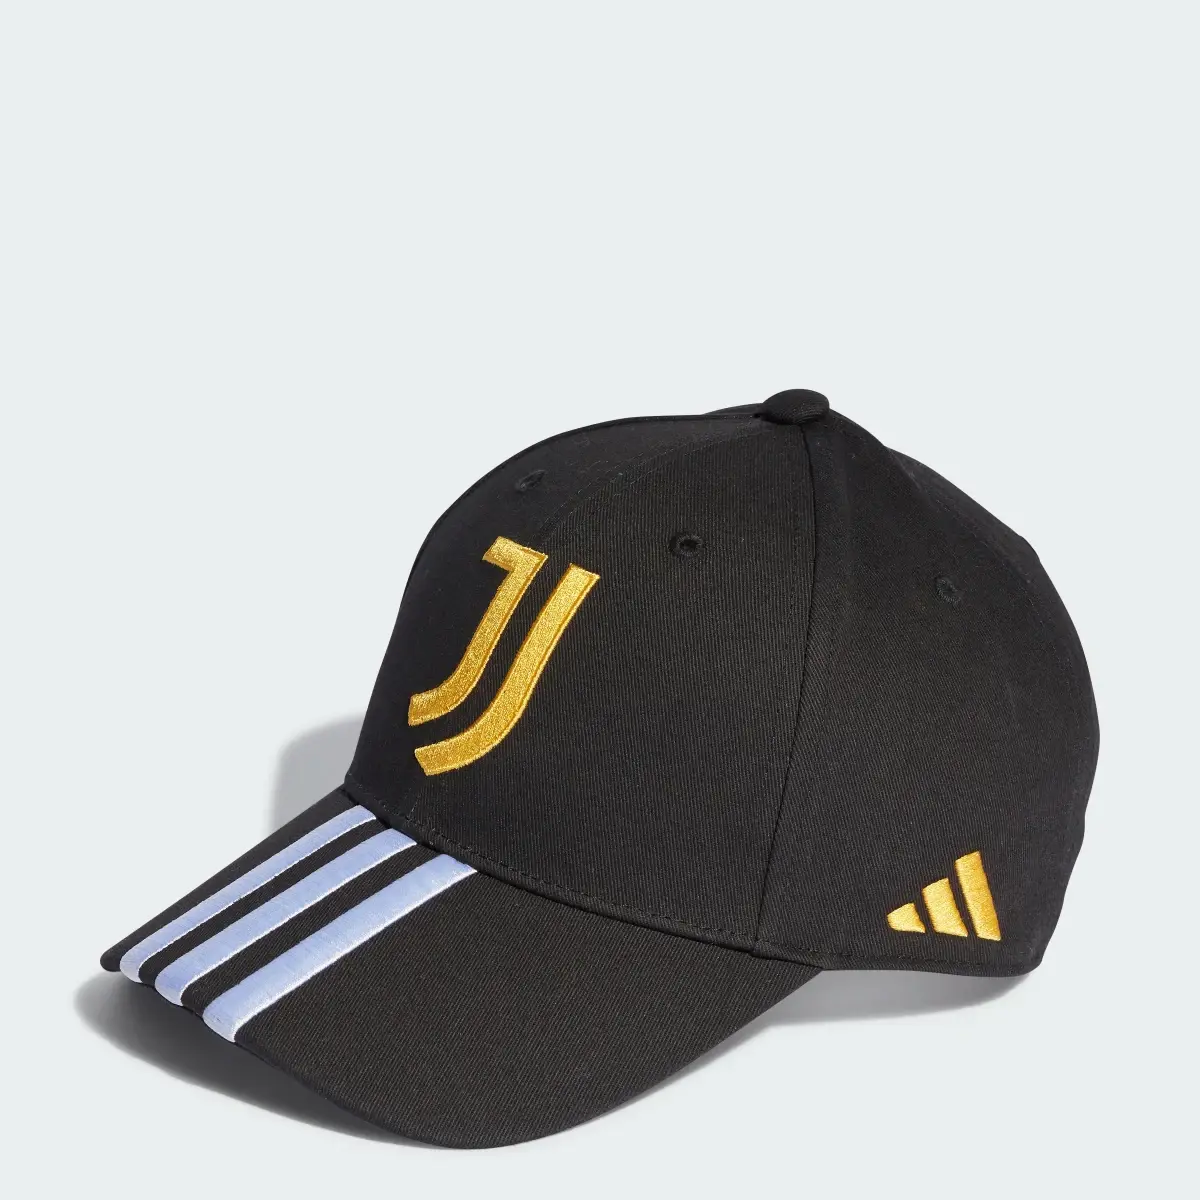 Adidas Juventus Baseball Cap. 1